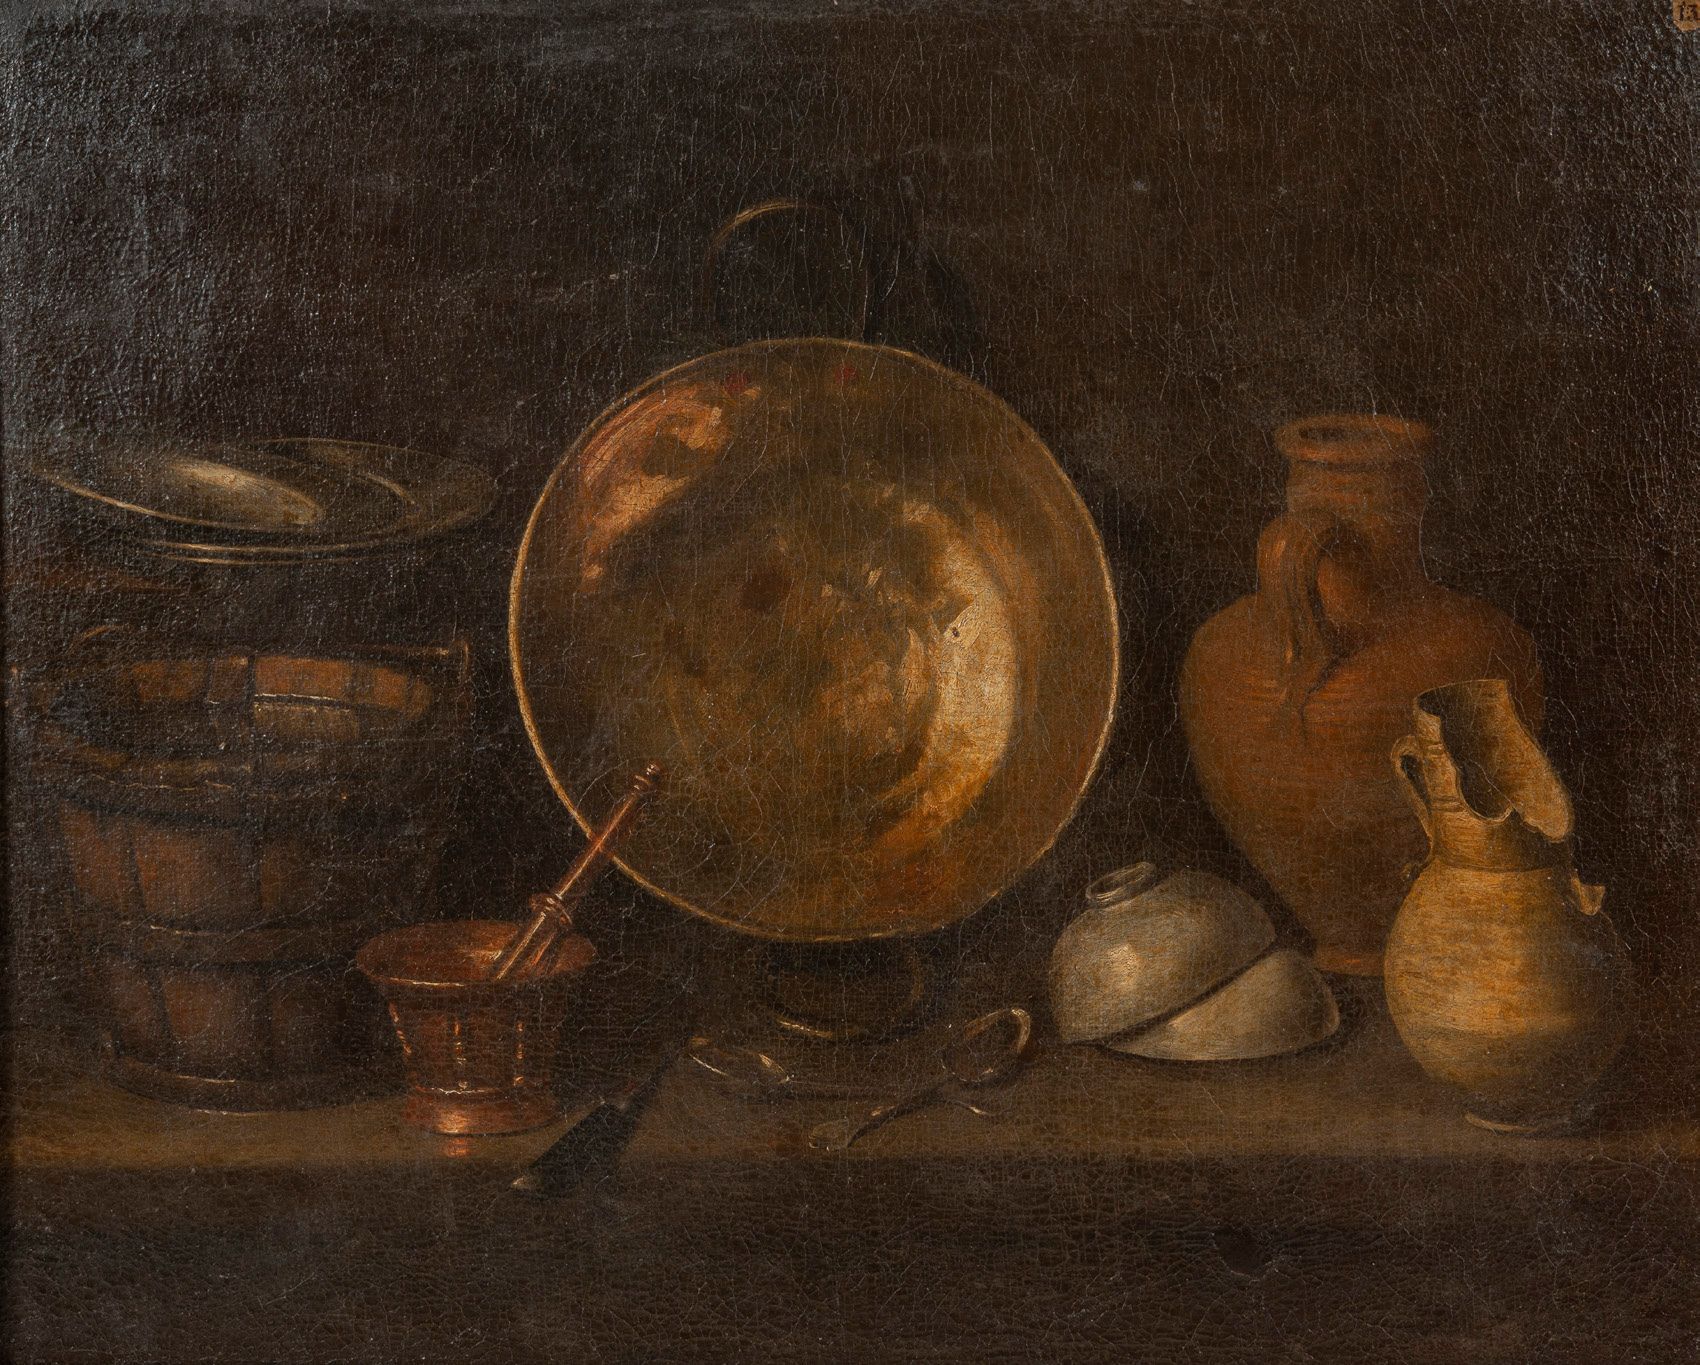 ECOLE de SEVILLE du XVIIème siècle 
布面油画
右上角有13号标签
81,5 x 101,5 cm.
重画。
右下角有旧时事故&hellip;